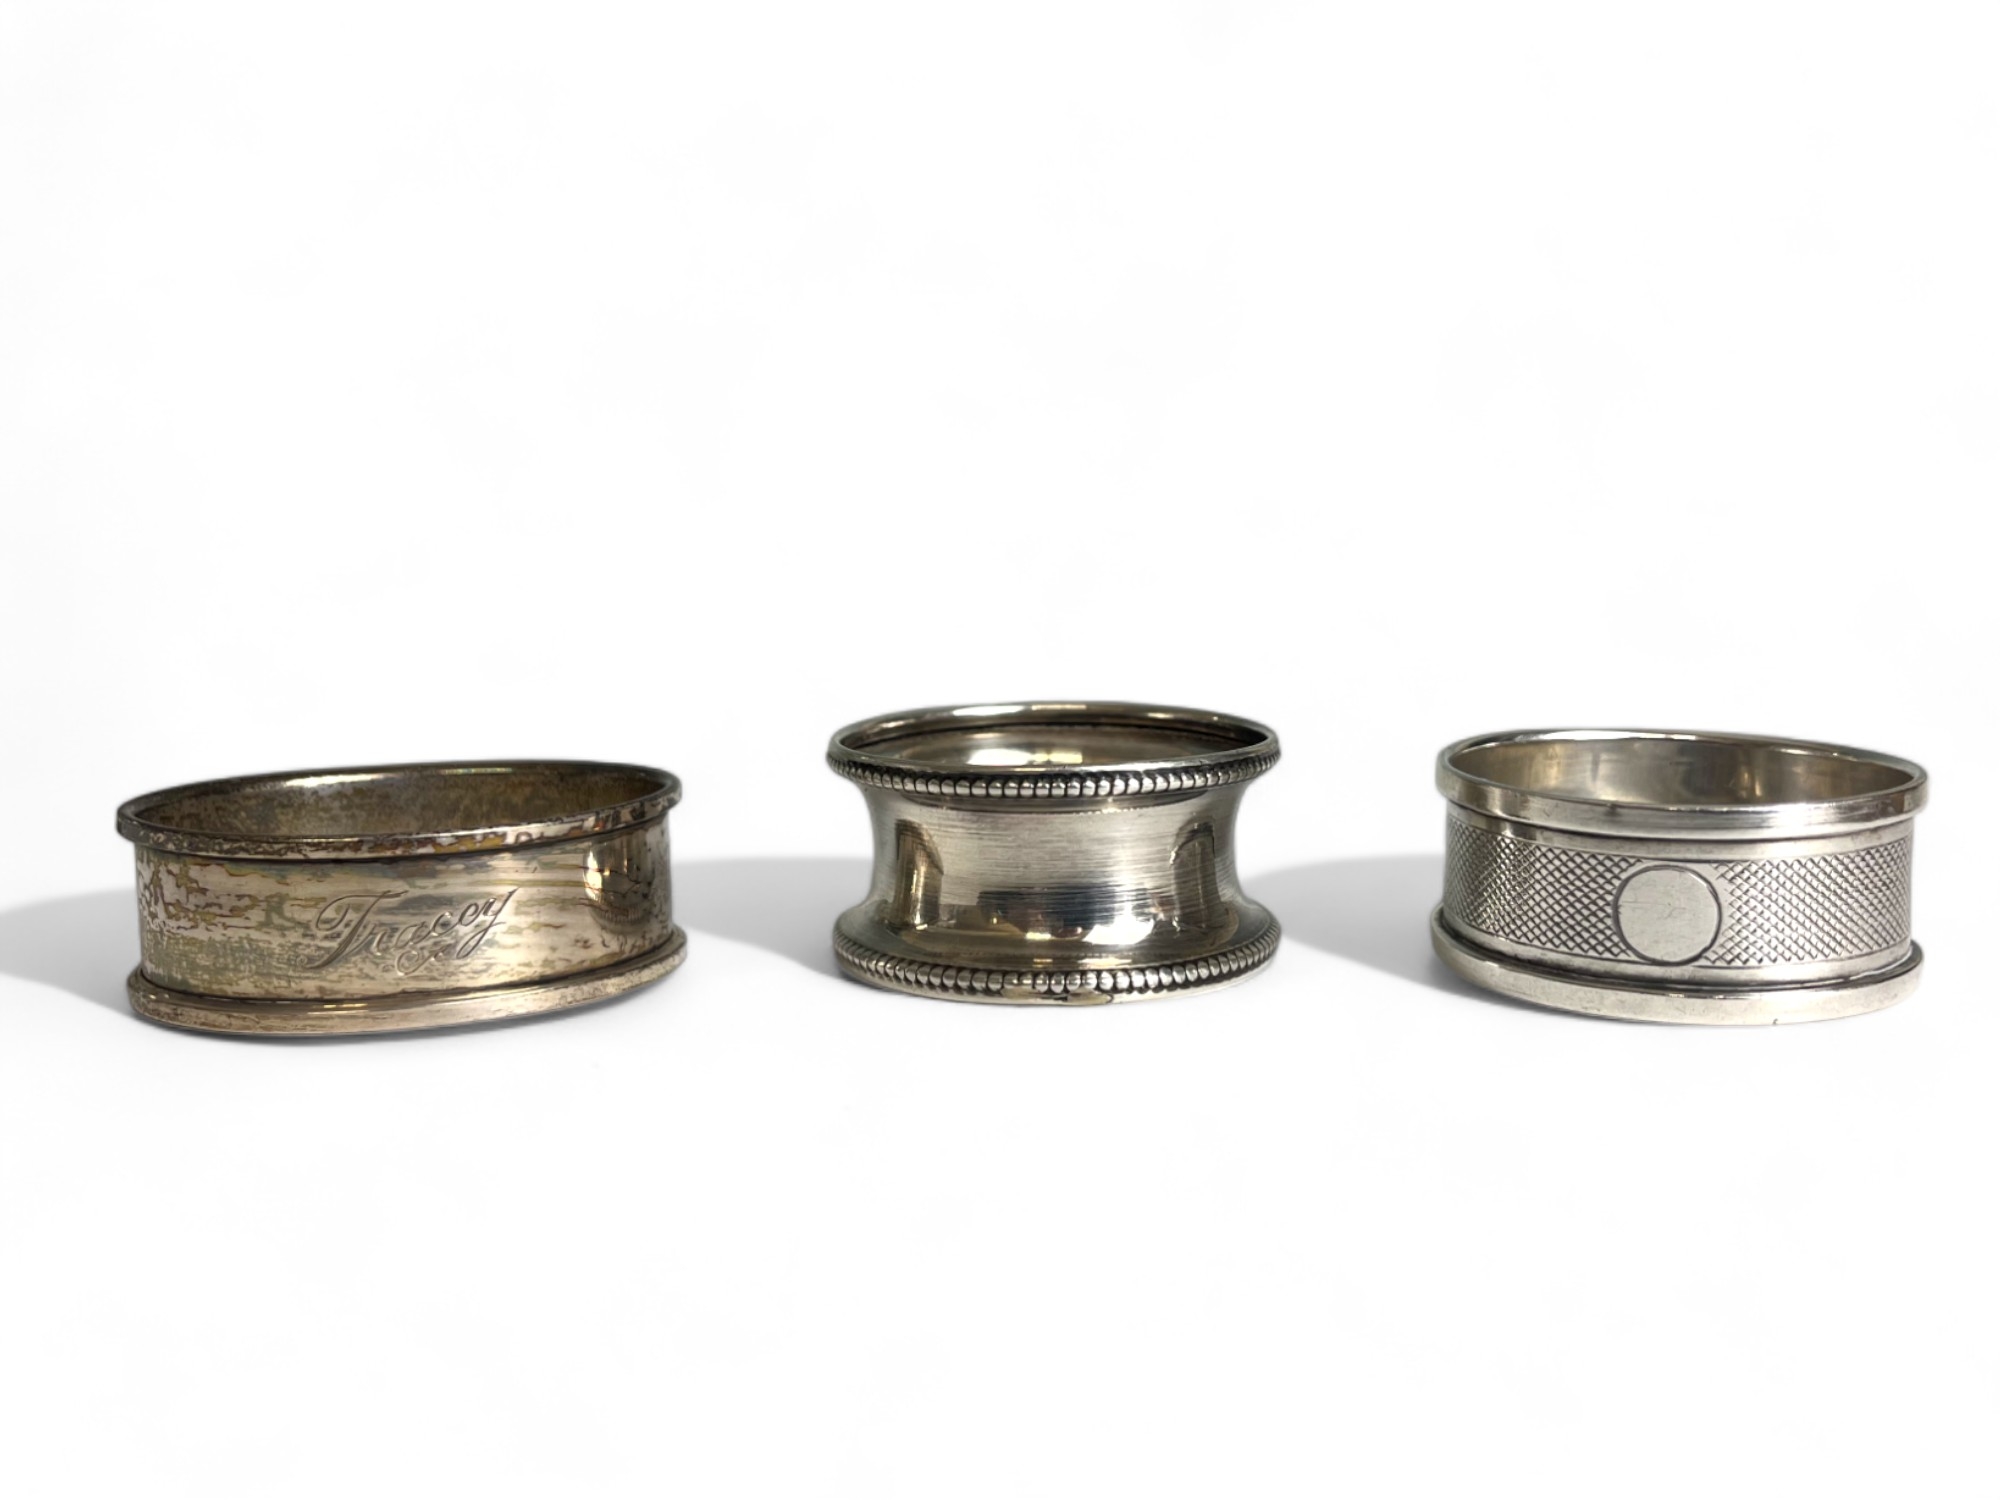 Three sterling silver Napkin rings. Full hallmarks. 